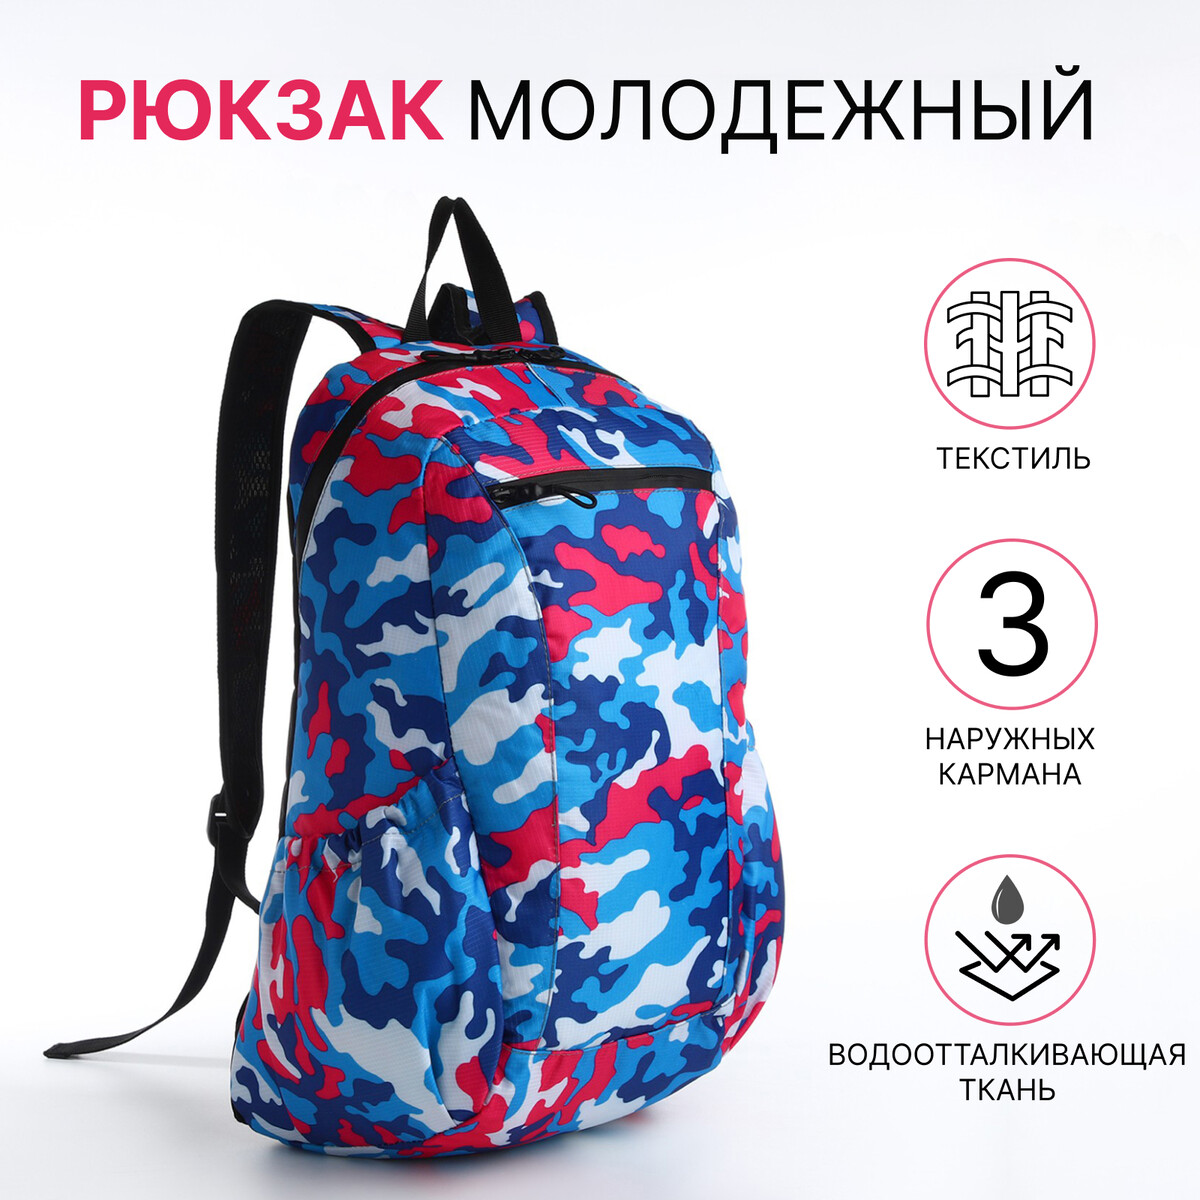 Рюкзак молодежный, водонепроницаемый на молнии, 3 кармана, цвет голубой/розовый рюкзак молодежный из текстиля на молнии 3 кармана поясная сумка голубой белый розовый